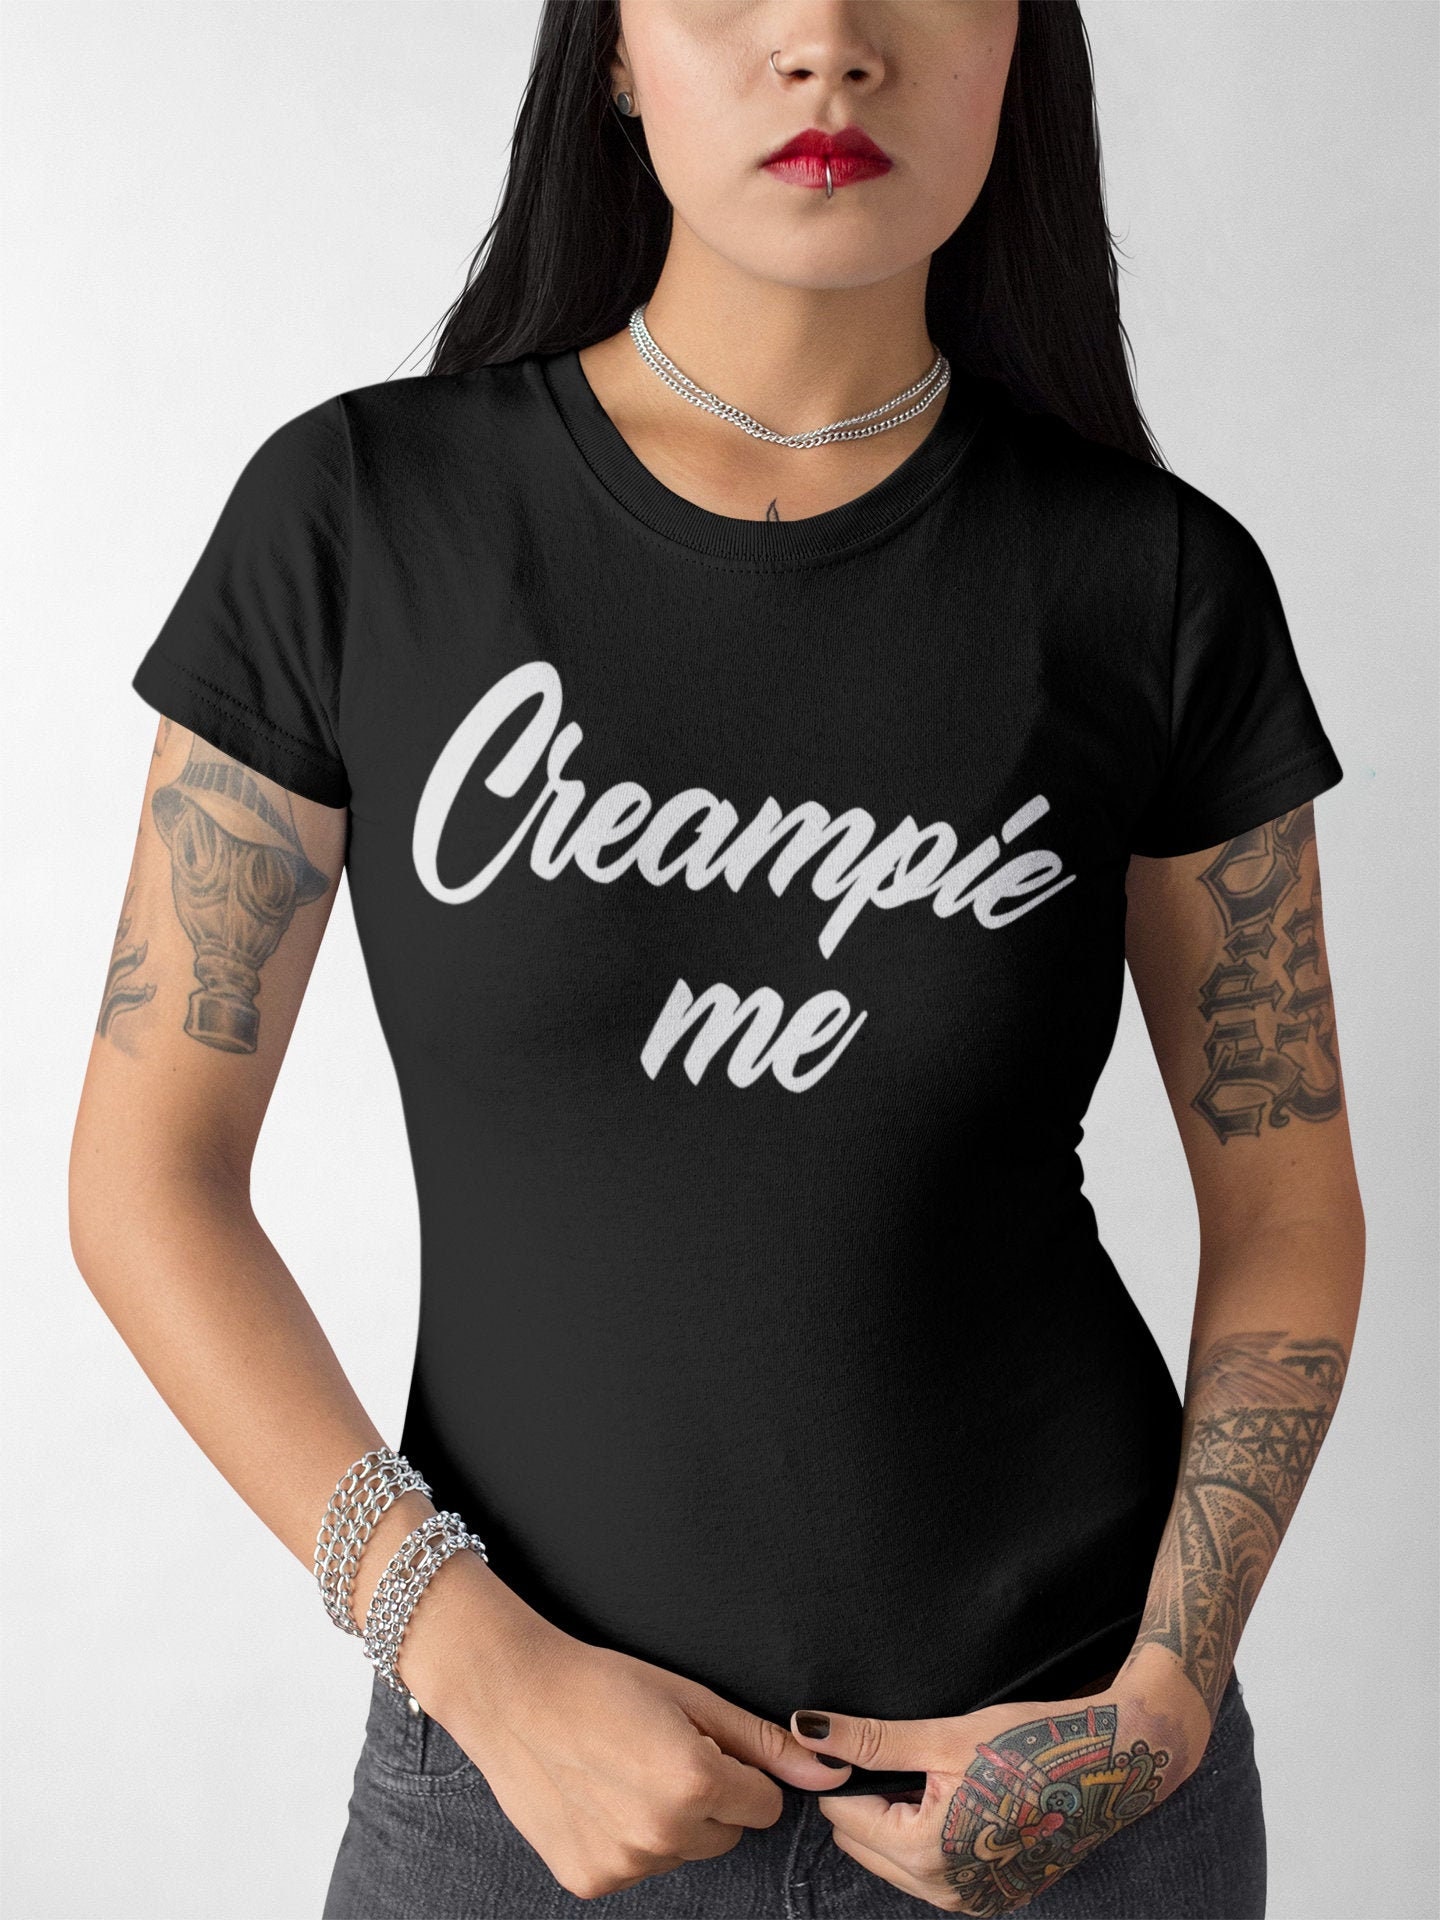 Creampie Me Creampie Fill Me With Cum Cum Cumslut image